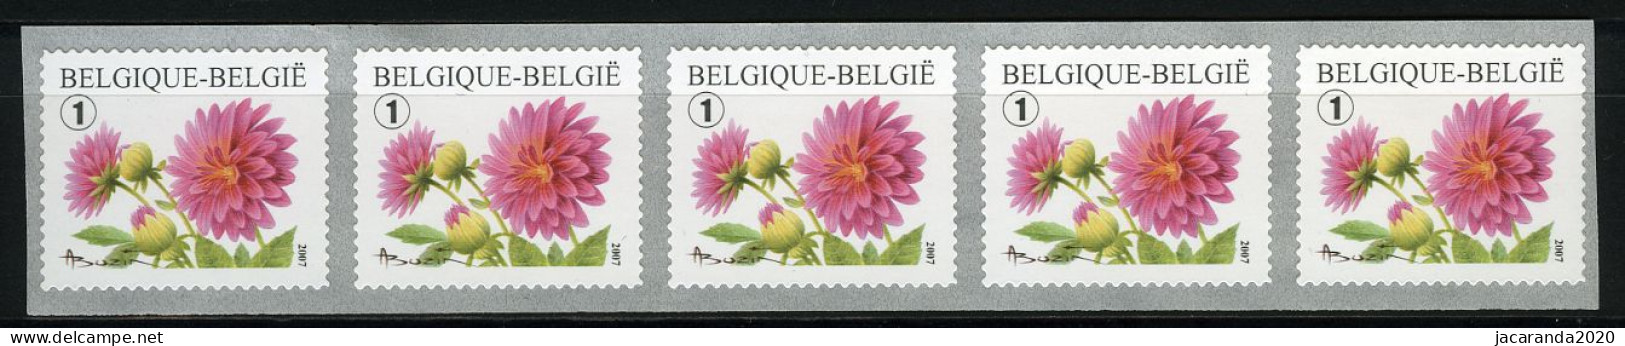 België R112 - Bloemen - Buzin (3684) - Dahlia - 2007 - Strook Van 5 - Bande De 5  - Coil Stamps